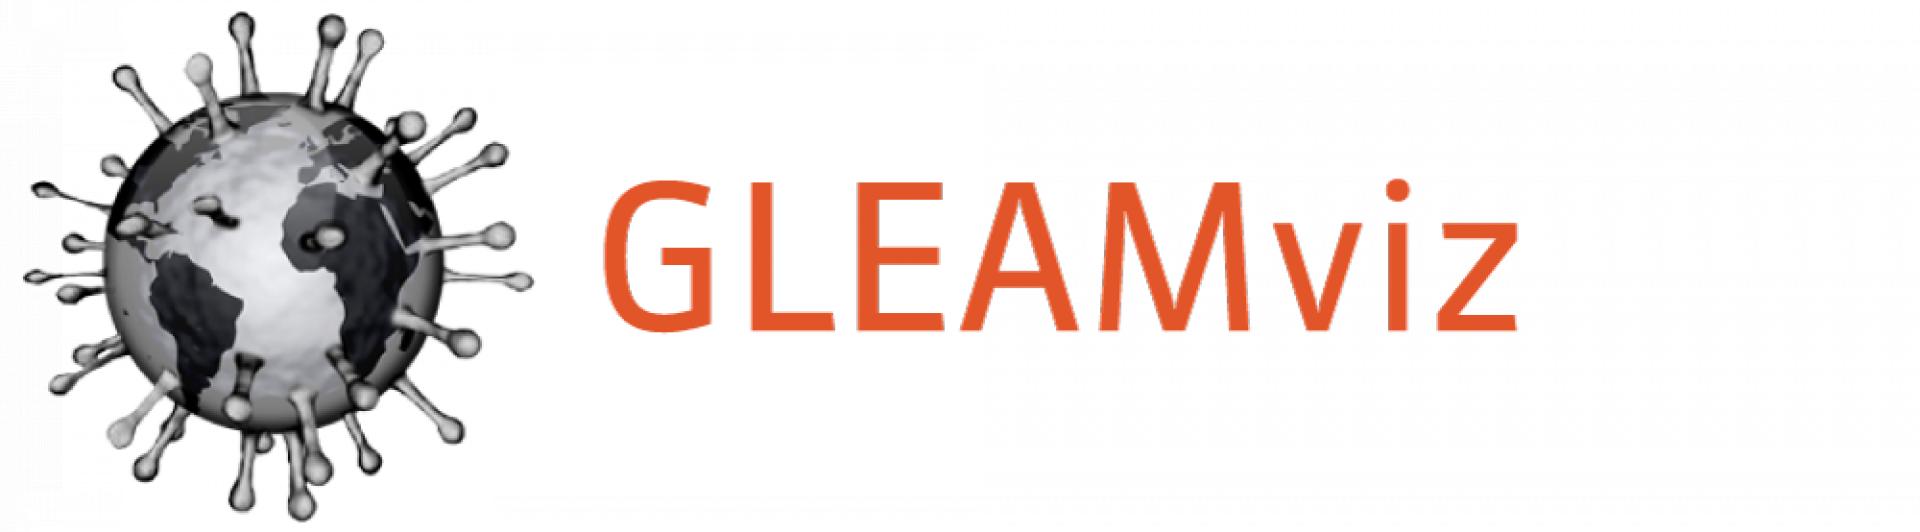 GLEAMviz-logo